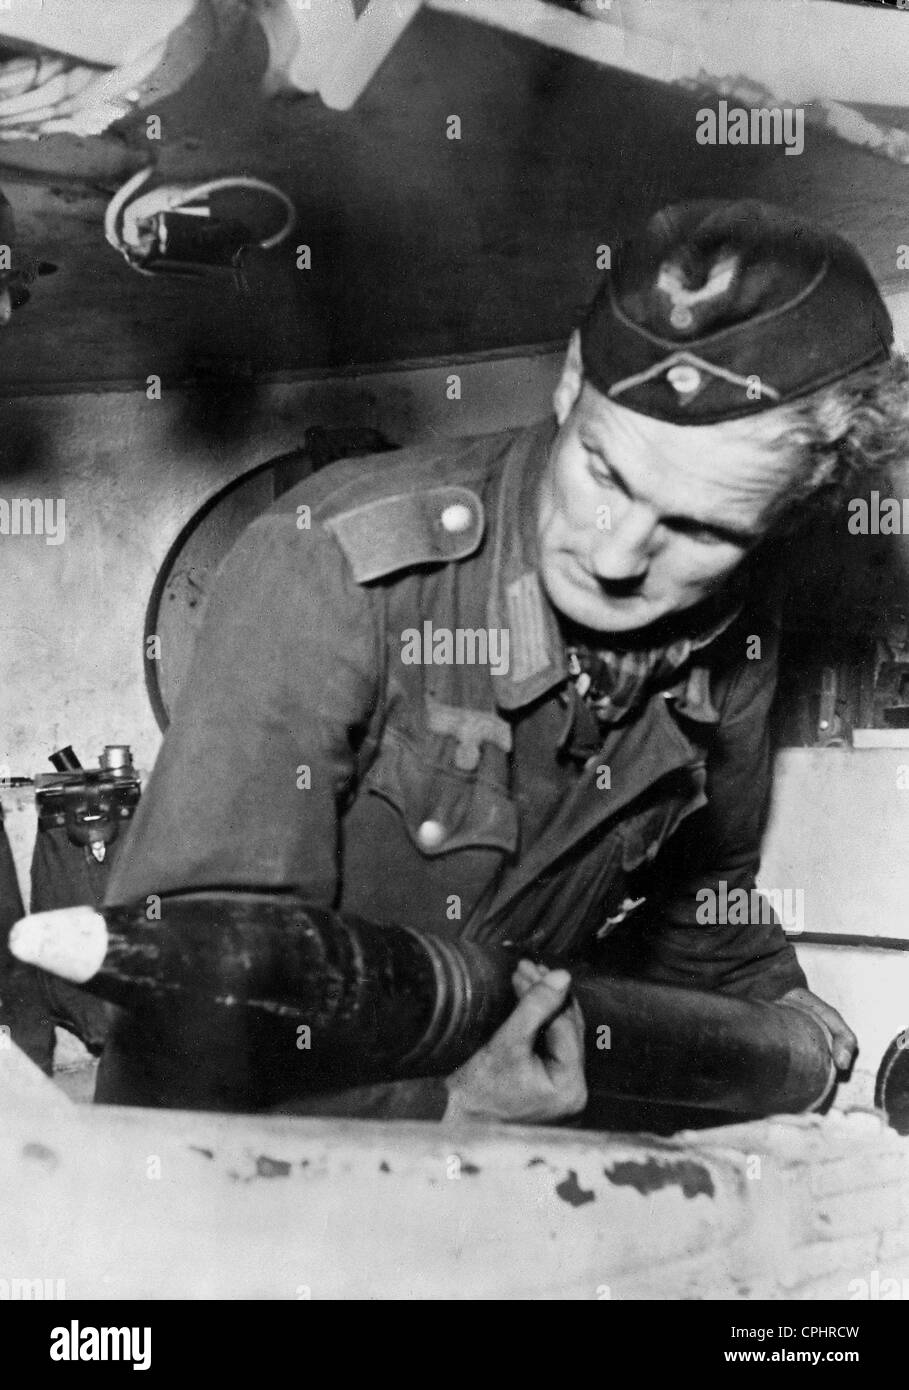 Schütze in einem Tiger-Panzer, 1944 Stockfotografie - Alamy